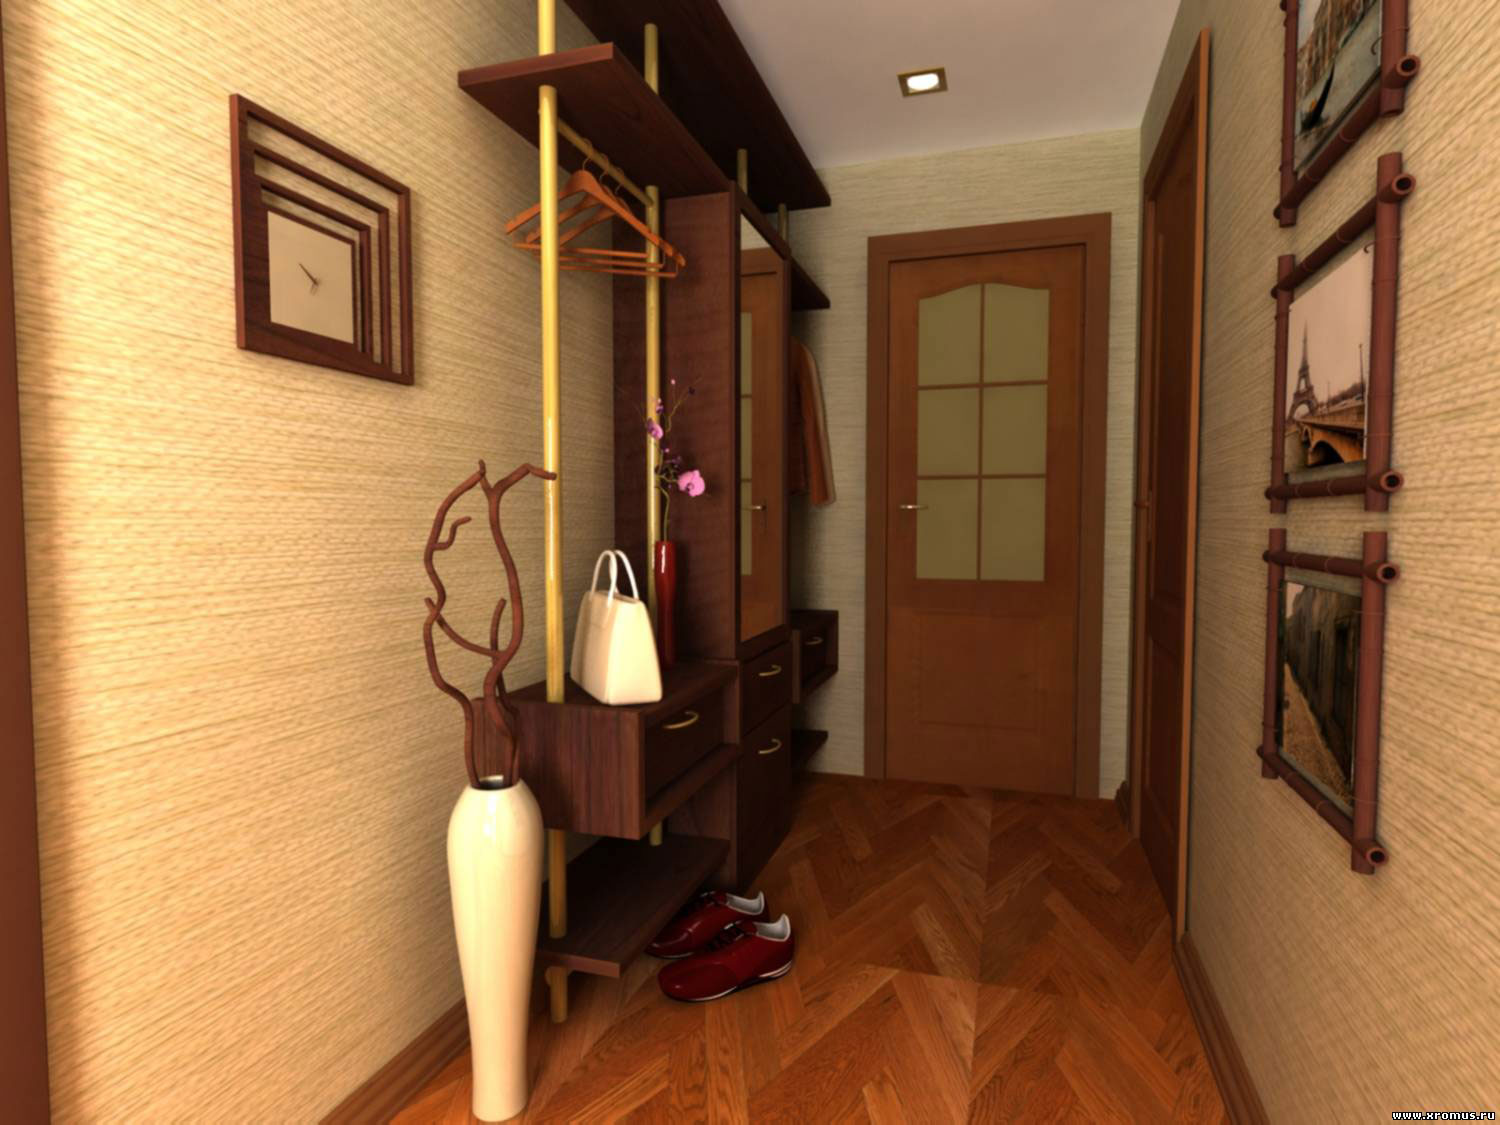 Idee di design per carta da parati per un corridoio in stile rigorosamente classico nell'appartamento